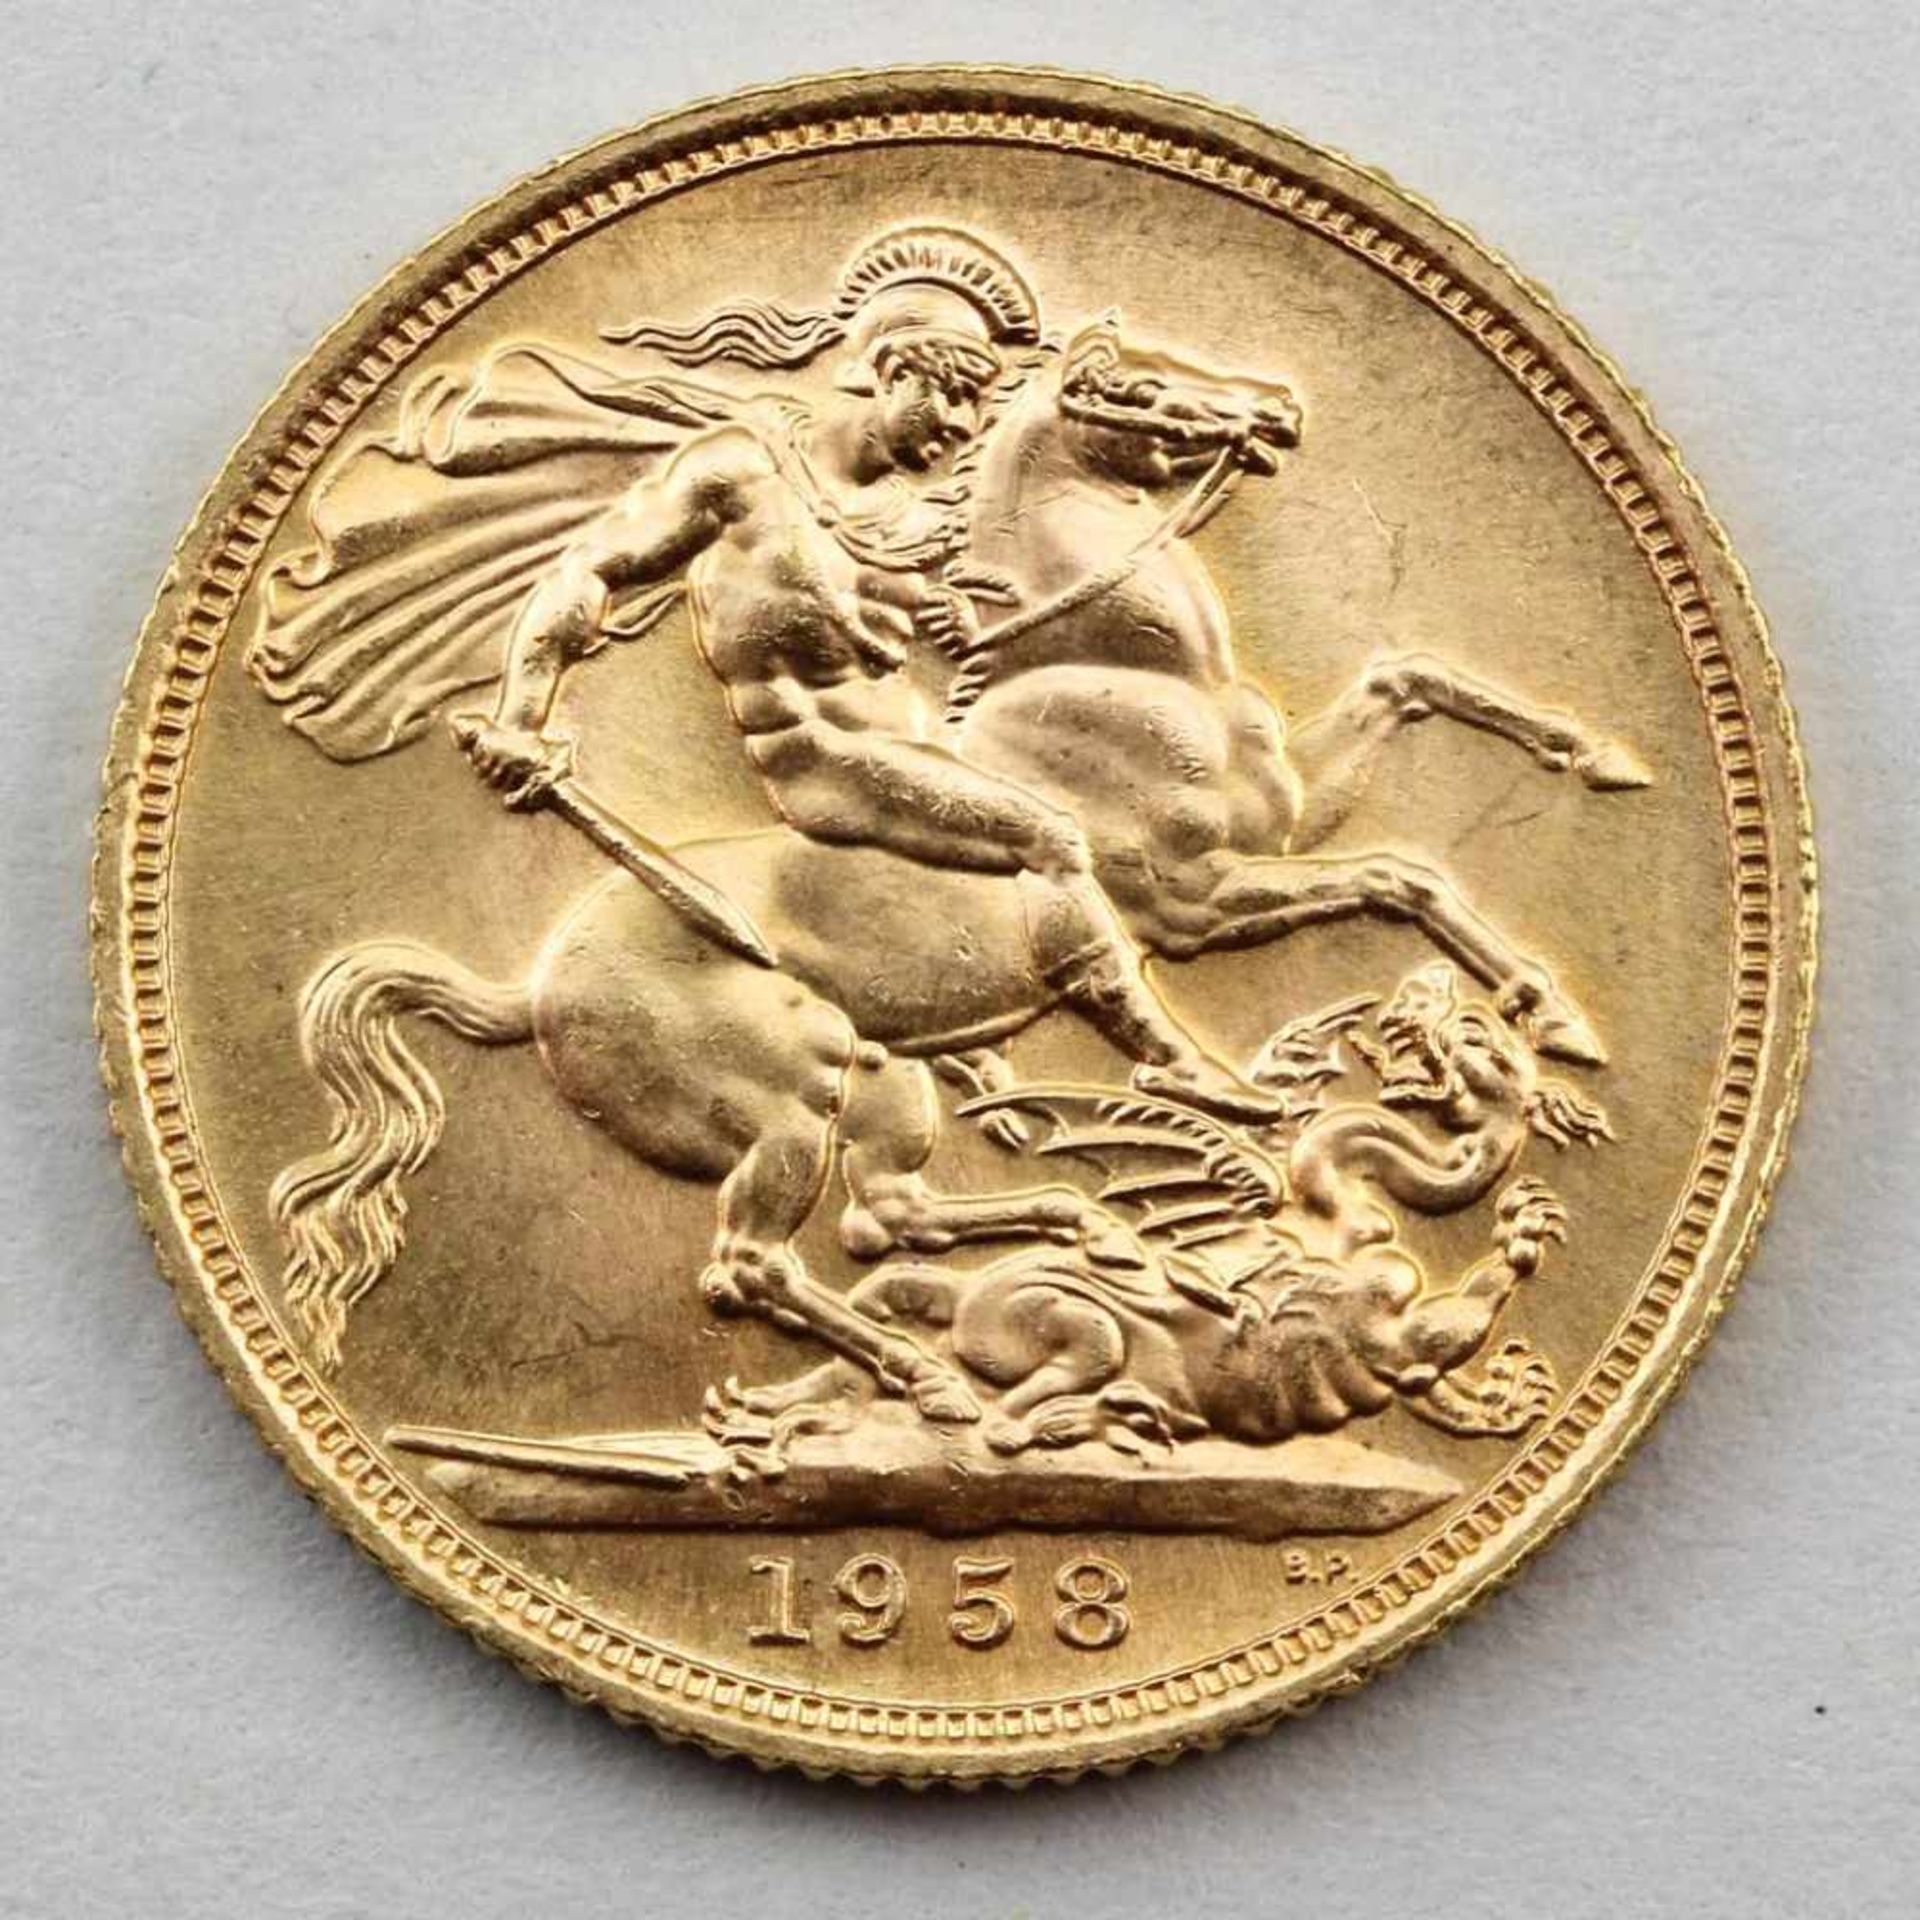 Goldmünze, England, Elisabeth II, 1 Sovereign, 1958.916/000 GG, 7,98 g. ss.- - -19.33 % buyer's - Bild 2 aus 2